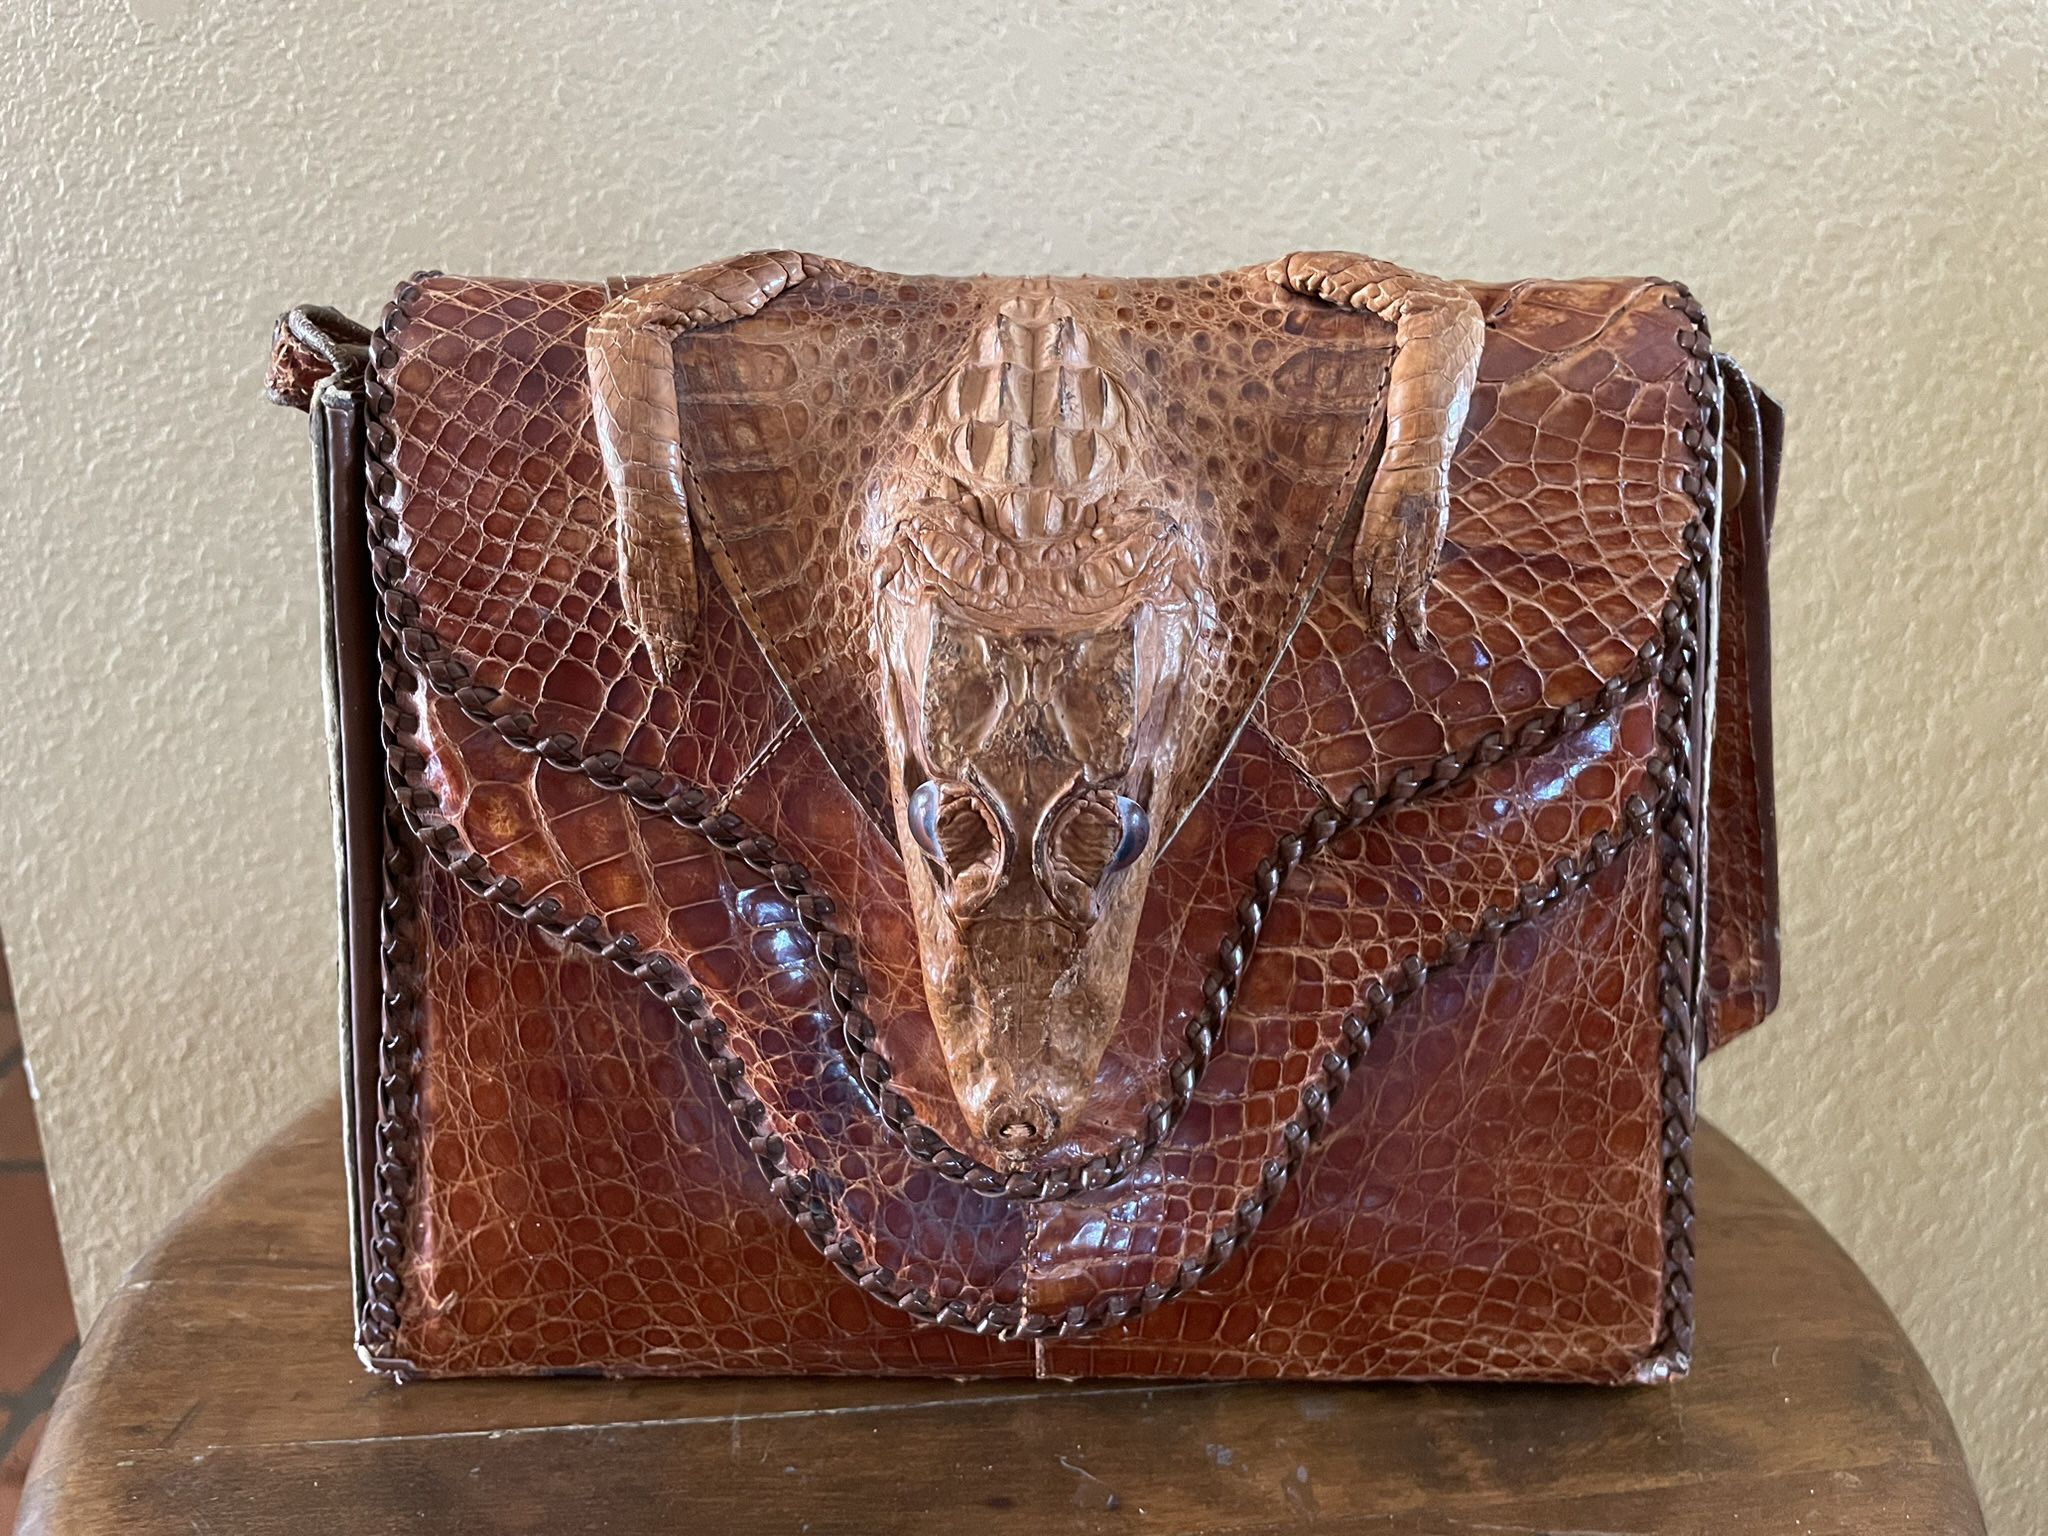 Vintage Alligator Bag